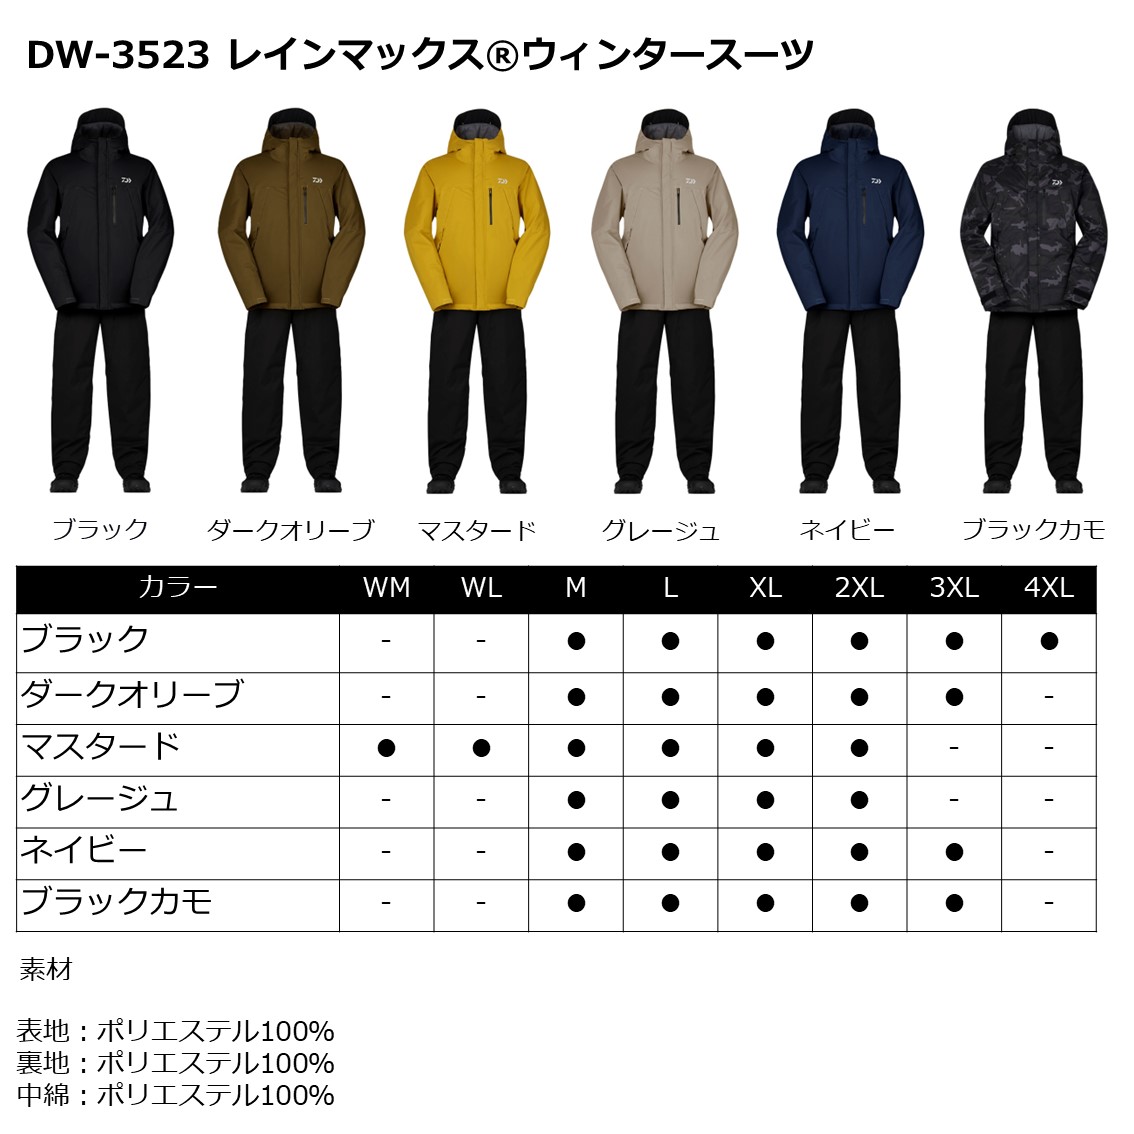 ダイワレインマックスウインタースーツ(防寒着)XL-